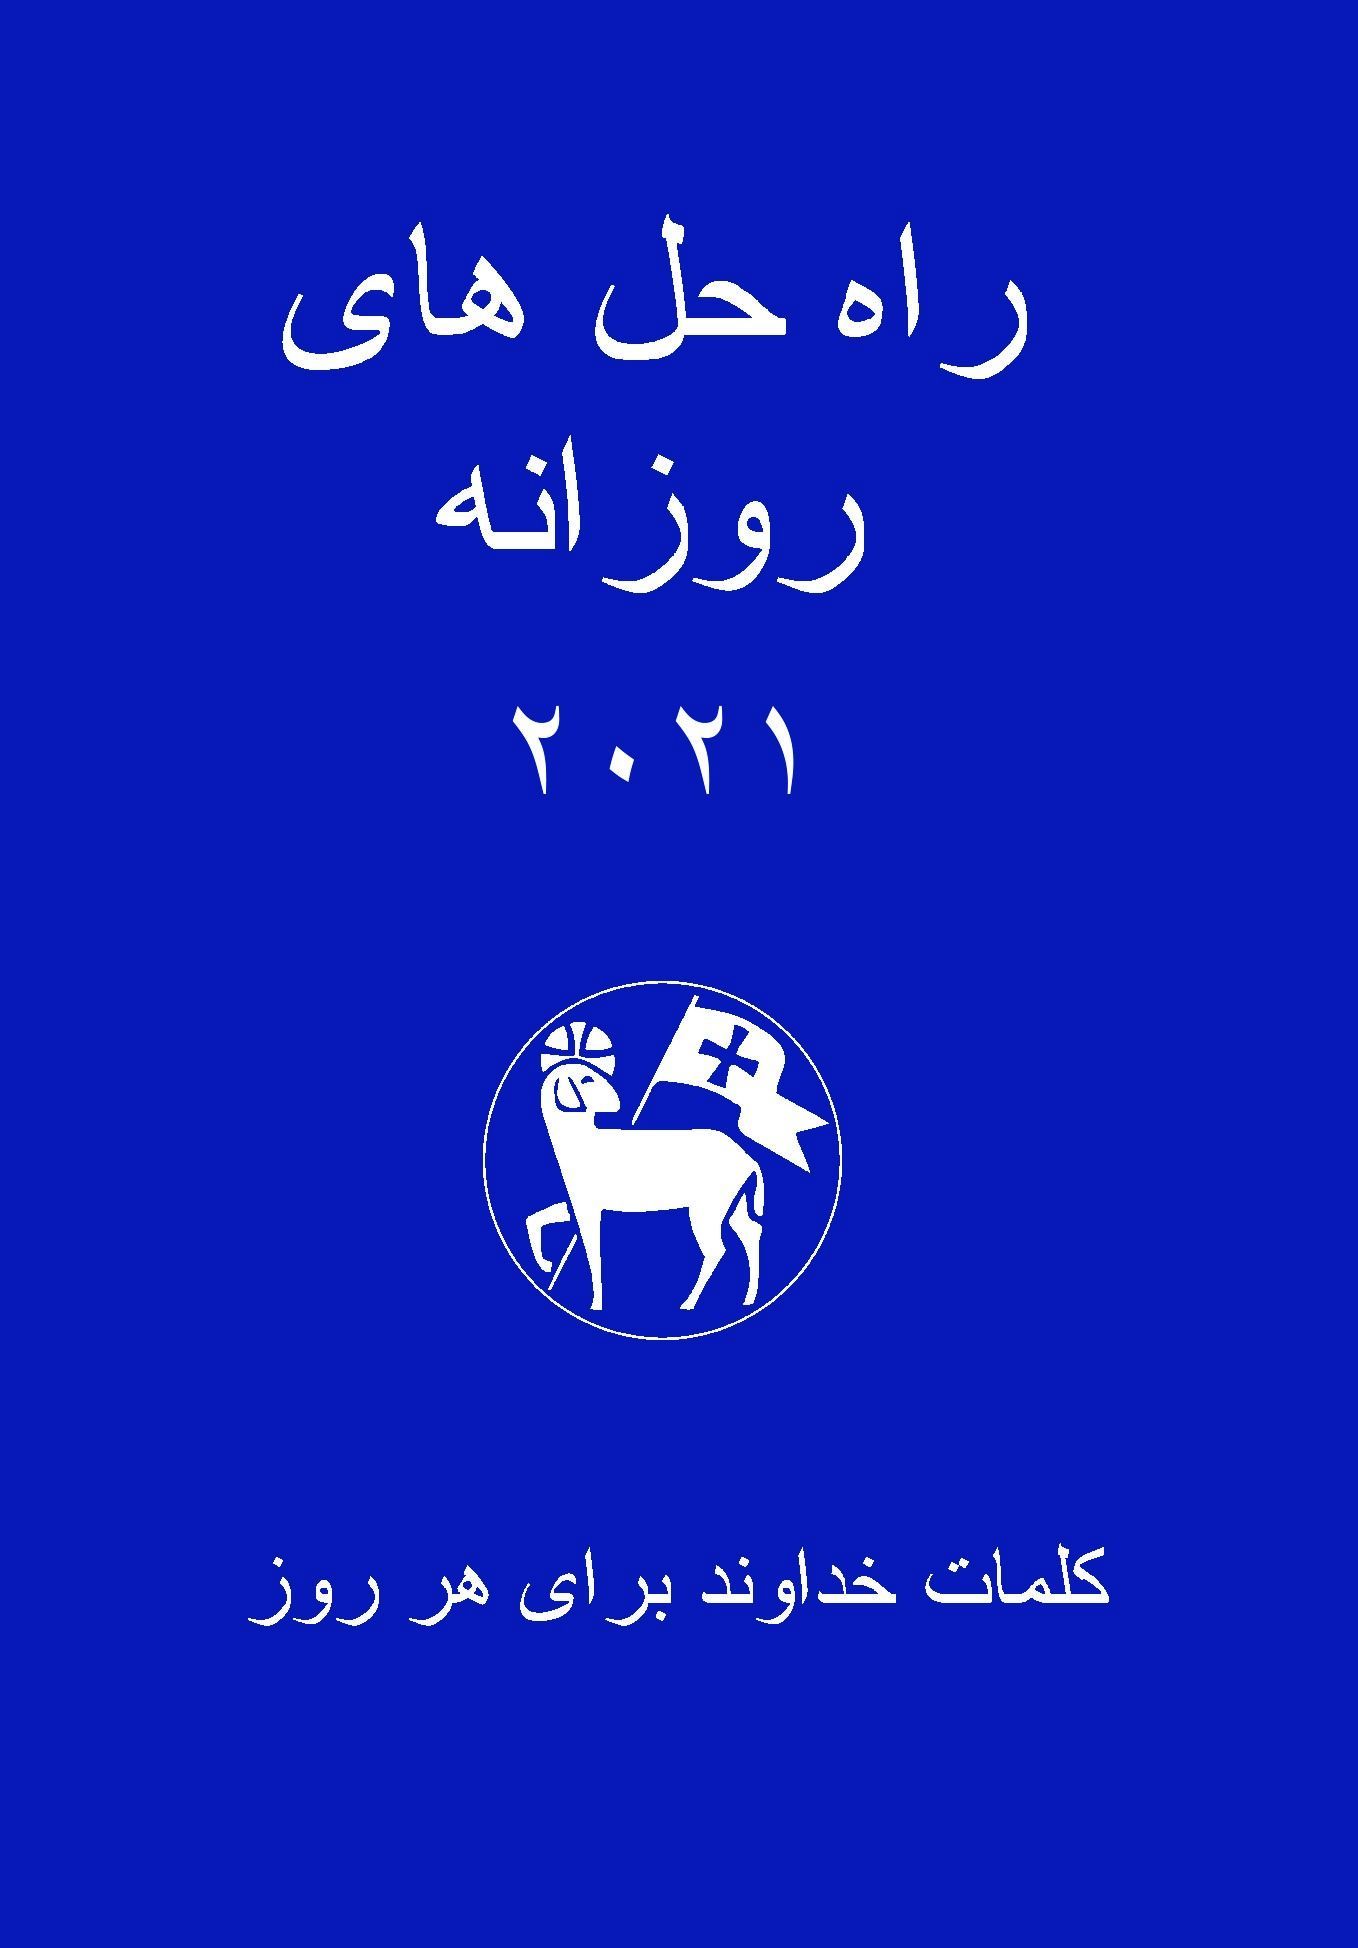 Losungen in Persisch (Farsi) 2022